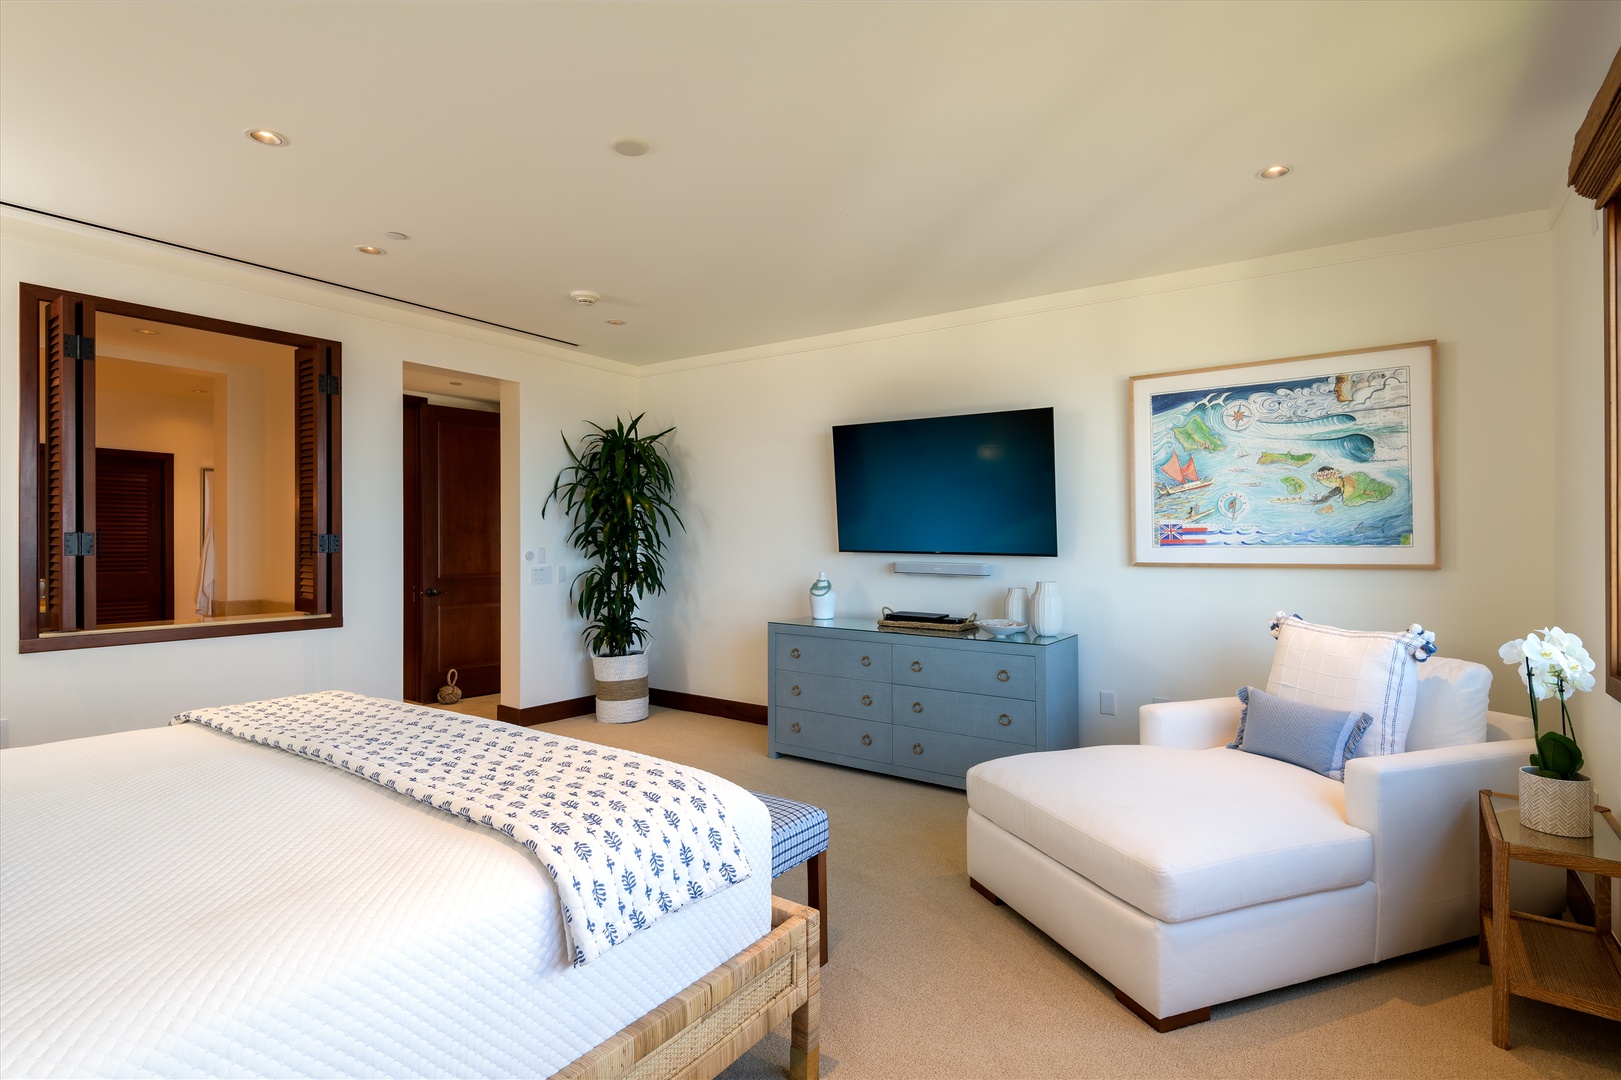 Wailea Vacation Rentals, Blue Ocean Suite H401 at Wailea Beach Villas* - Ocean View Master Bedroom